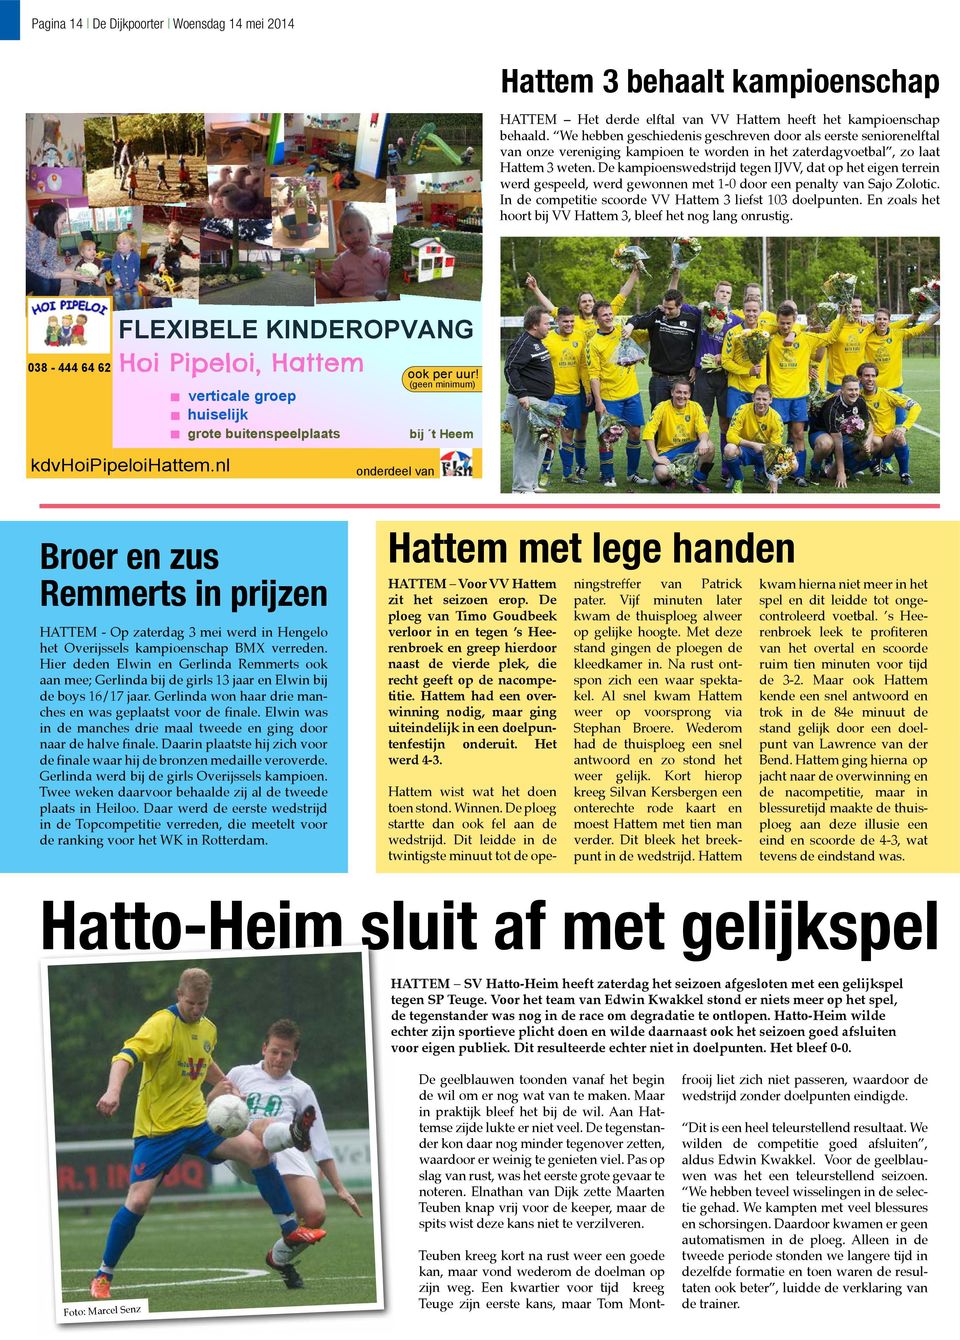 De kampioenswedstrijd tegen IJVV, dat op het eigen terrein werd gespeeld, werd gewonnen met 1-0 door een penalty van Sajo Zolotic. In de competitie scoorde VV Hattem 3 liefst 103 doelpunten.